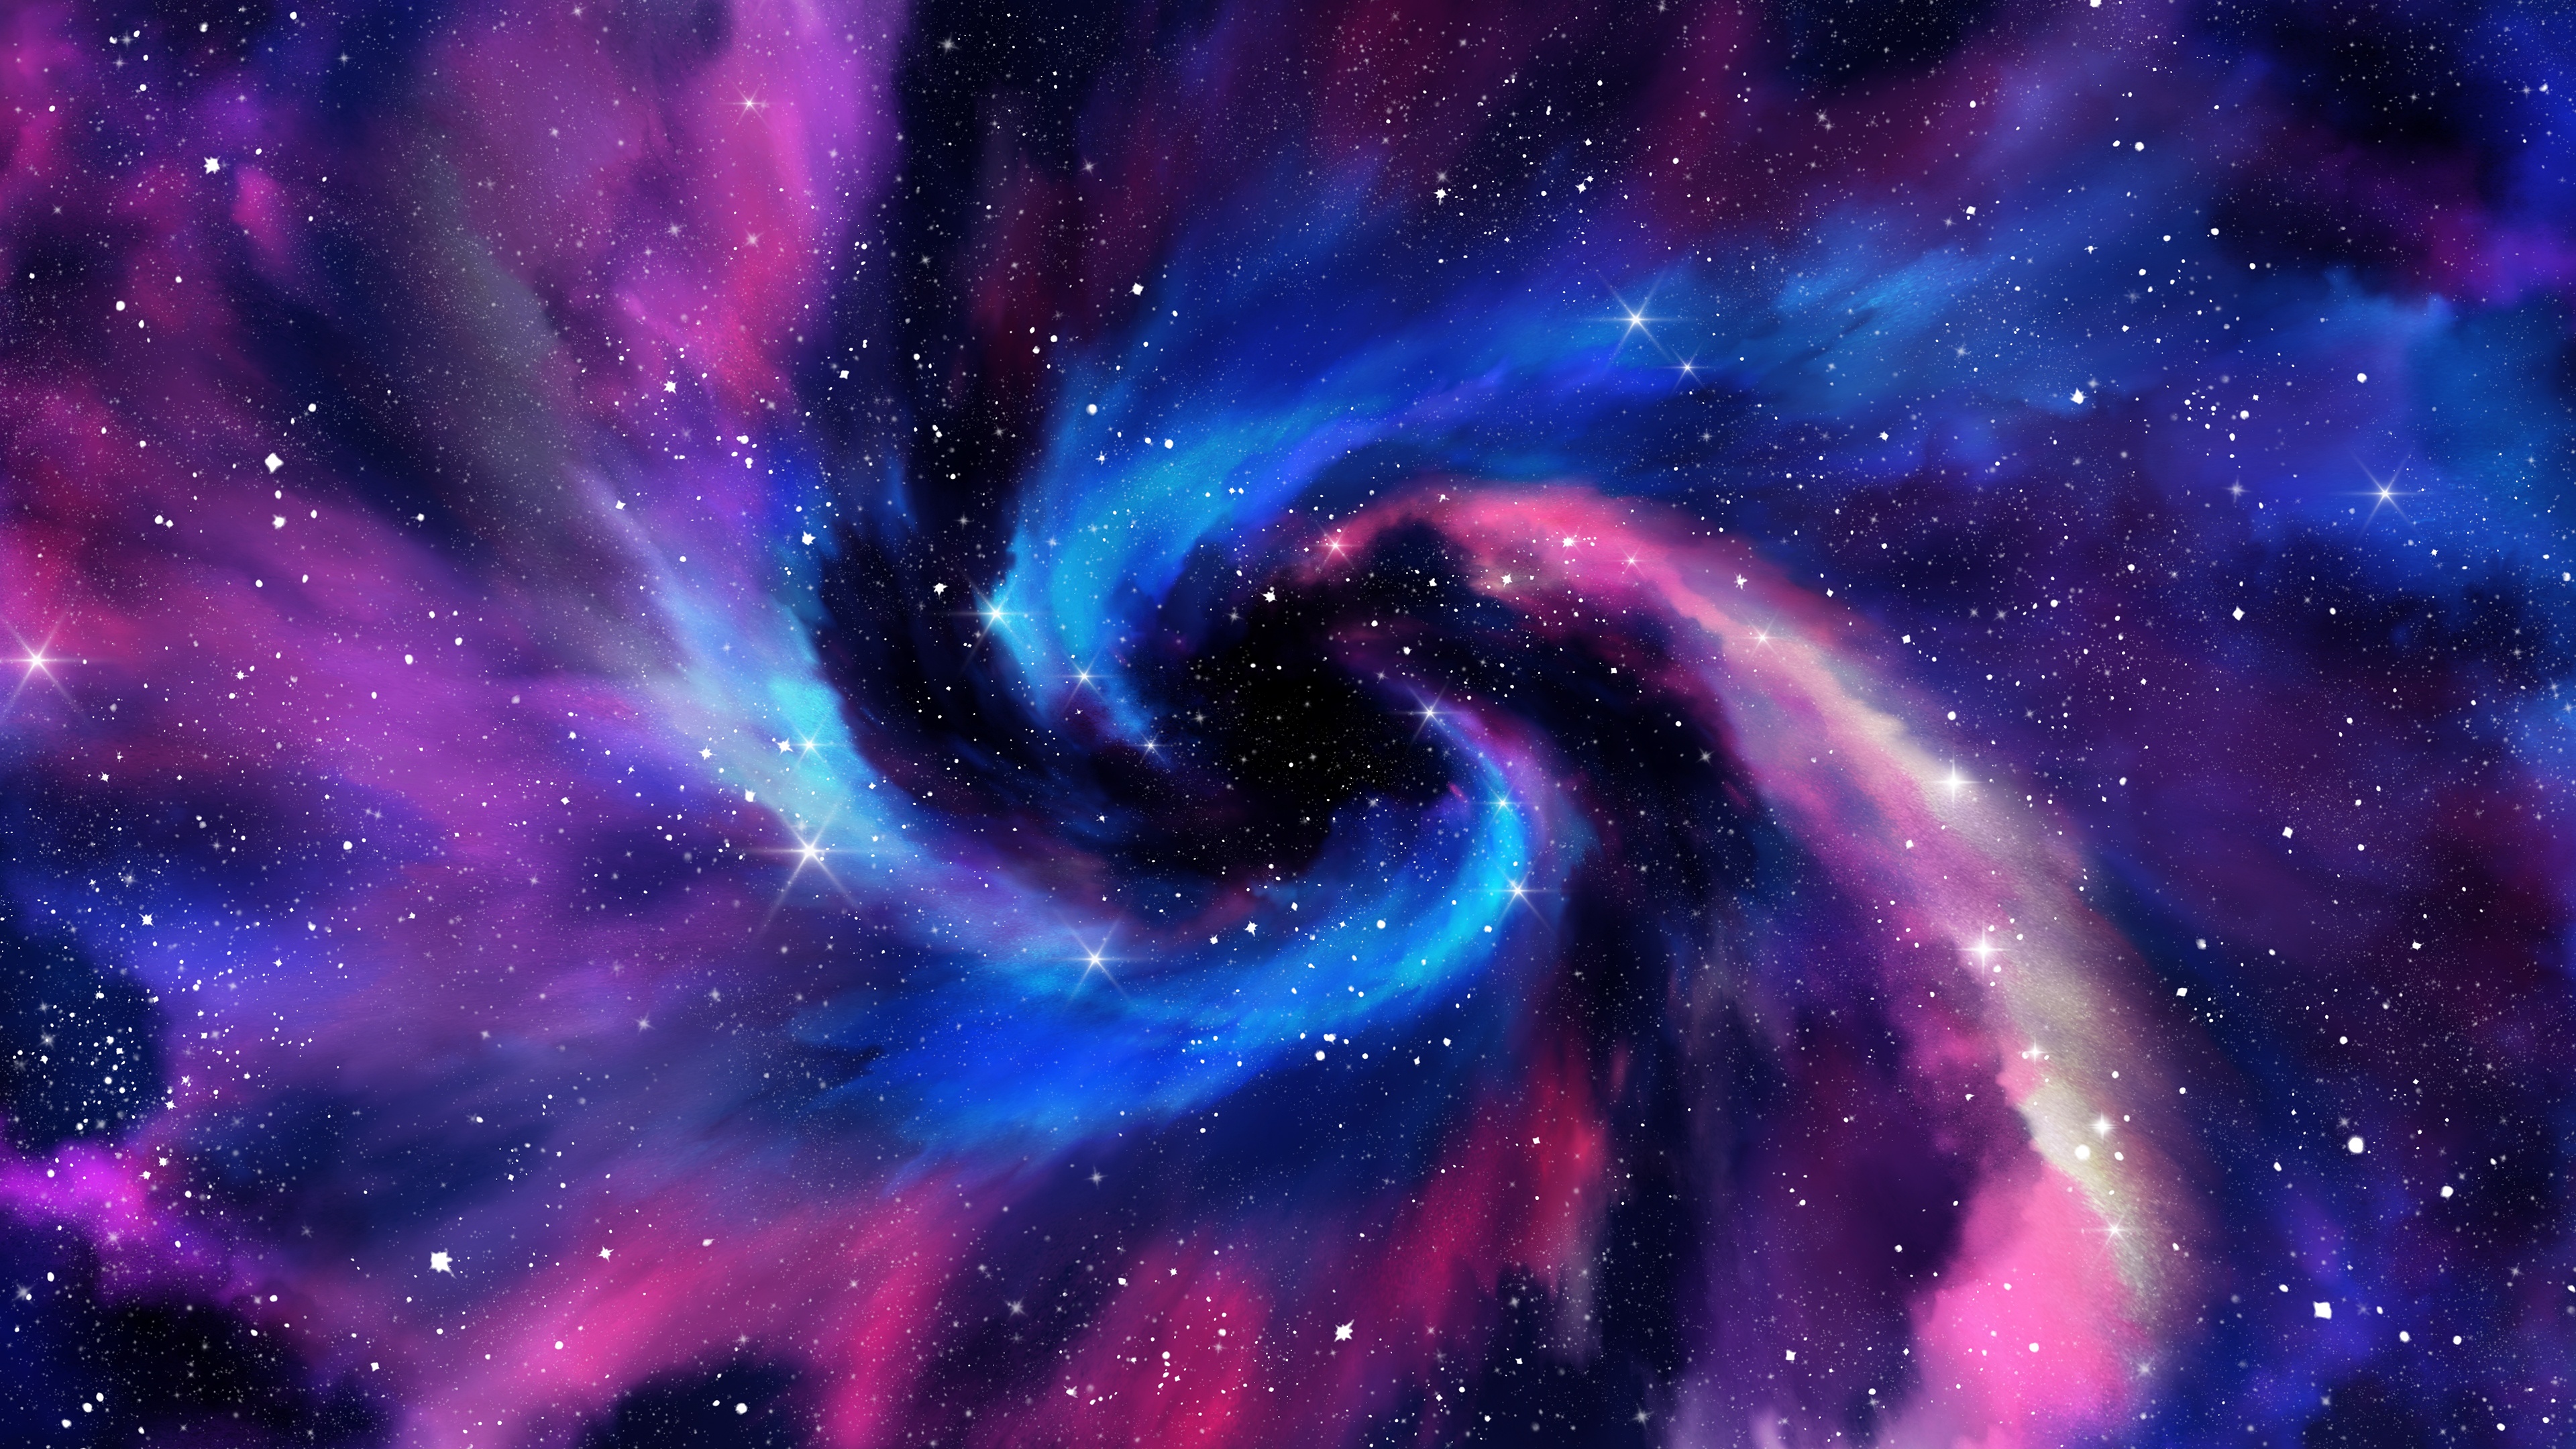 Thiên hà xoắn ốc là biểu tượng kinh điển của sự hoang dã và bí ẩn trong không gian. Với các màu sắc đậm nhưng mềm mại, những hình ảnh thiên hà xoắn ốc tuyệt đẹp sẽ làm bạn say đắm và đưa bạn vào một thế giới mới lạ, rộng lớn. Hãy click để tìm hiểu hình nền thiên hà xoắn ốc cho điện thoại của bạn.